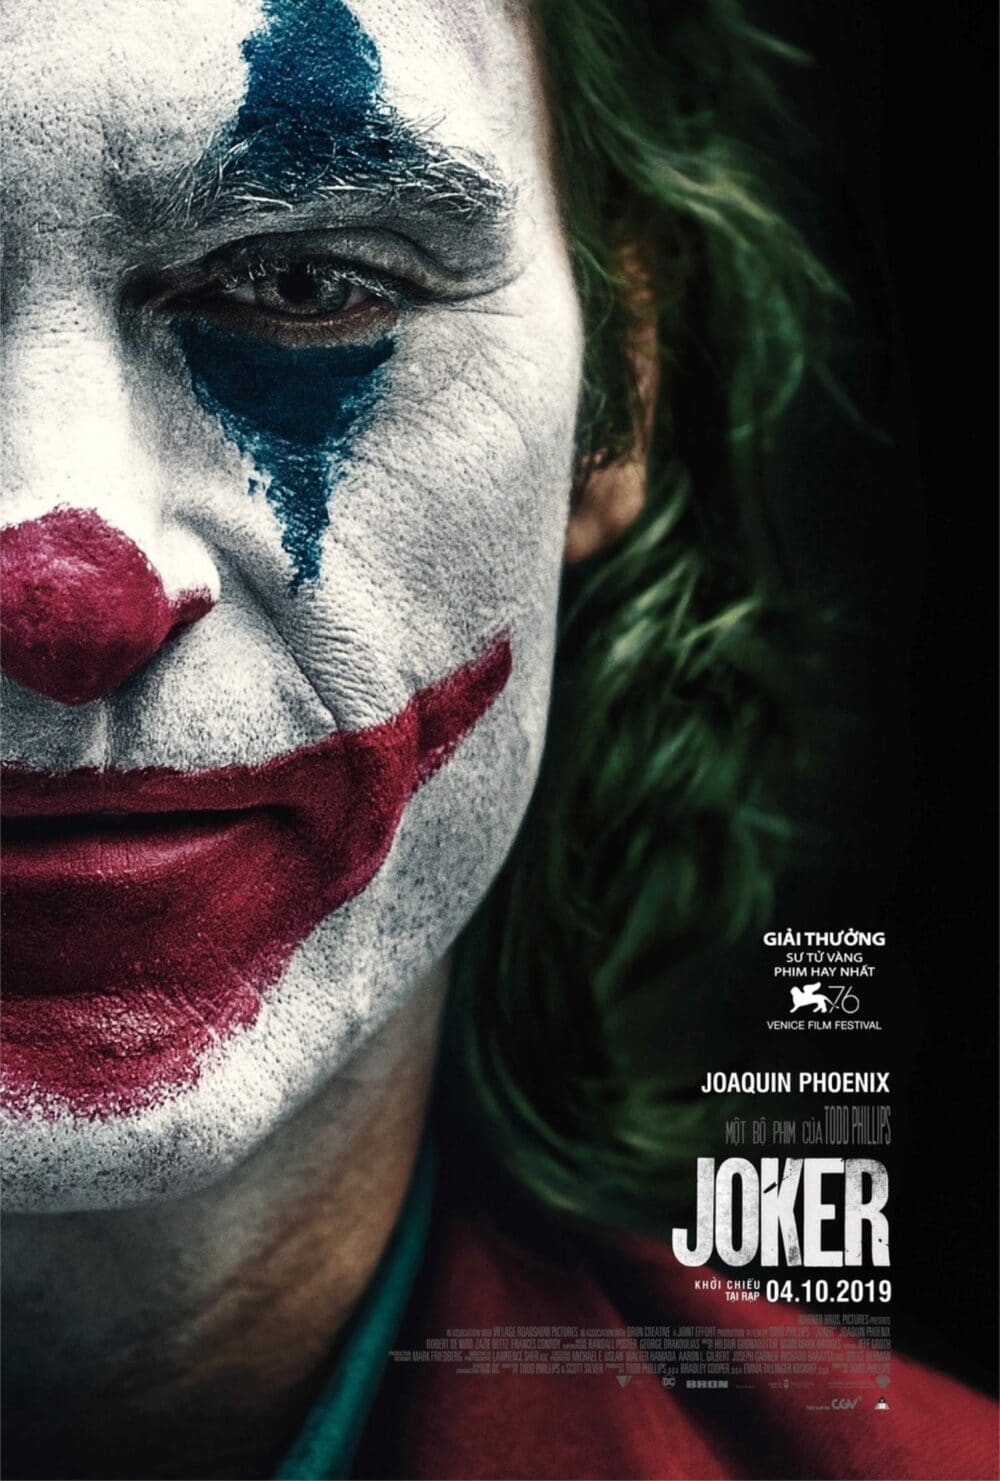 poster phim joker e1576839842609 - "Joker": Vạch trần mặt trái của đời sống xã hội